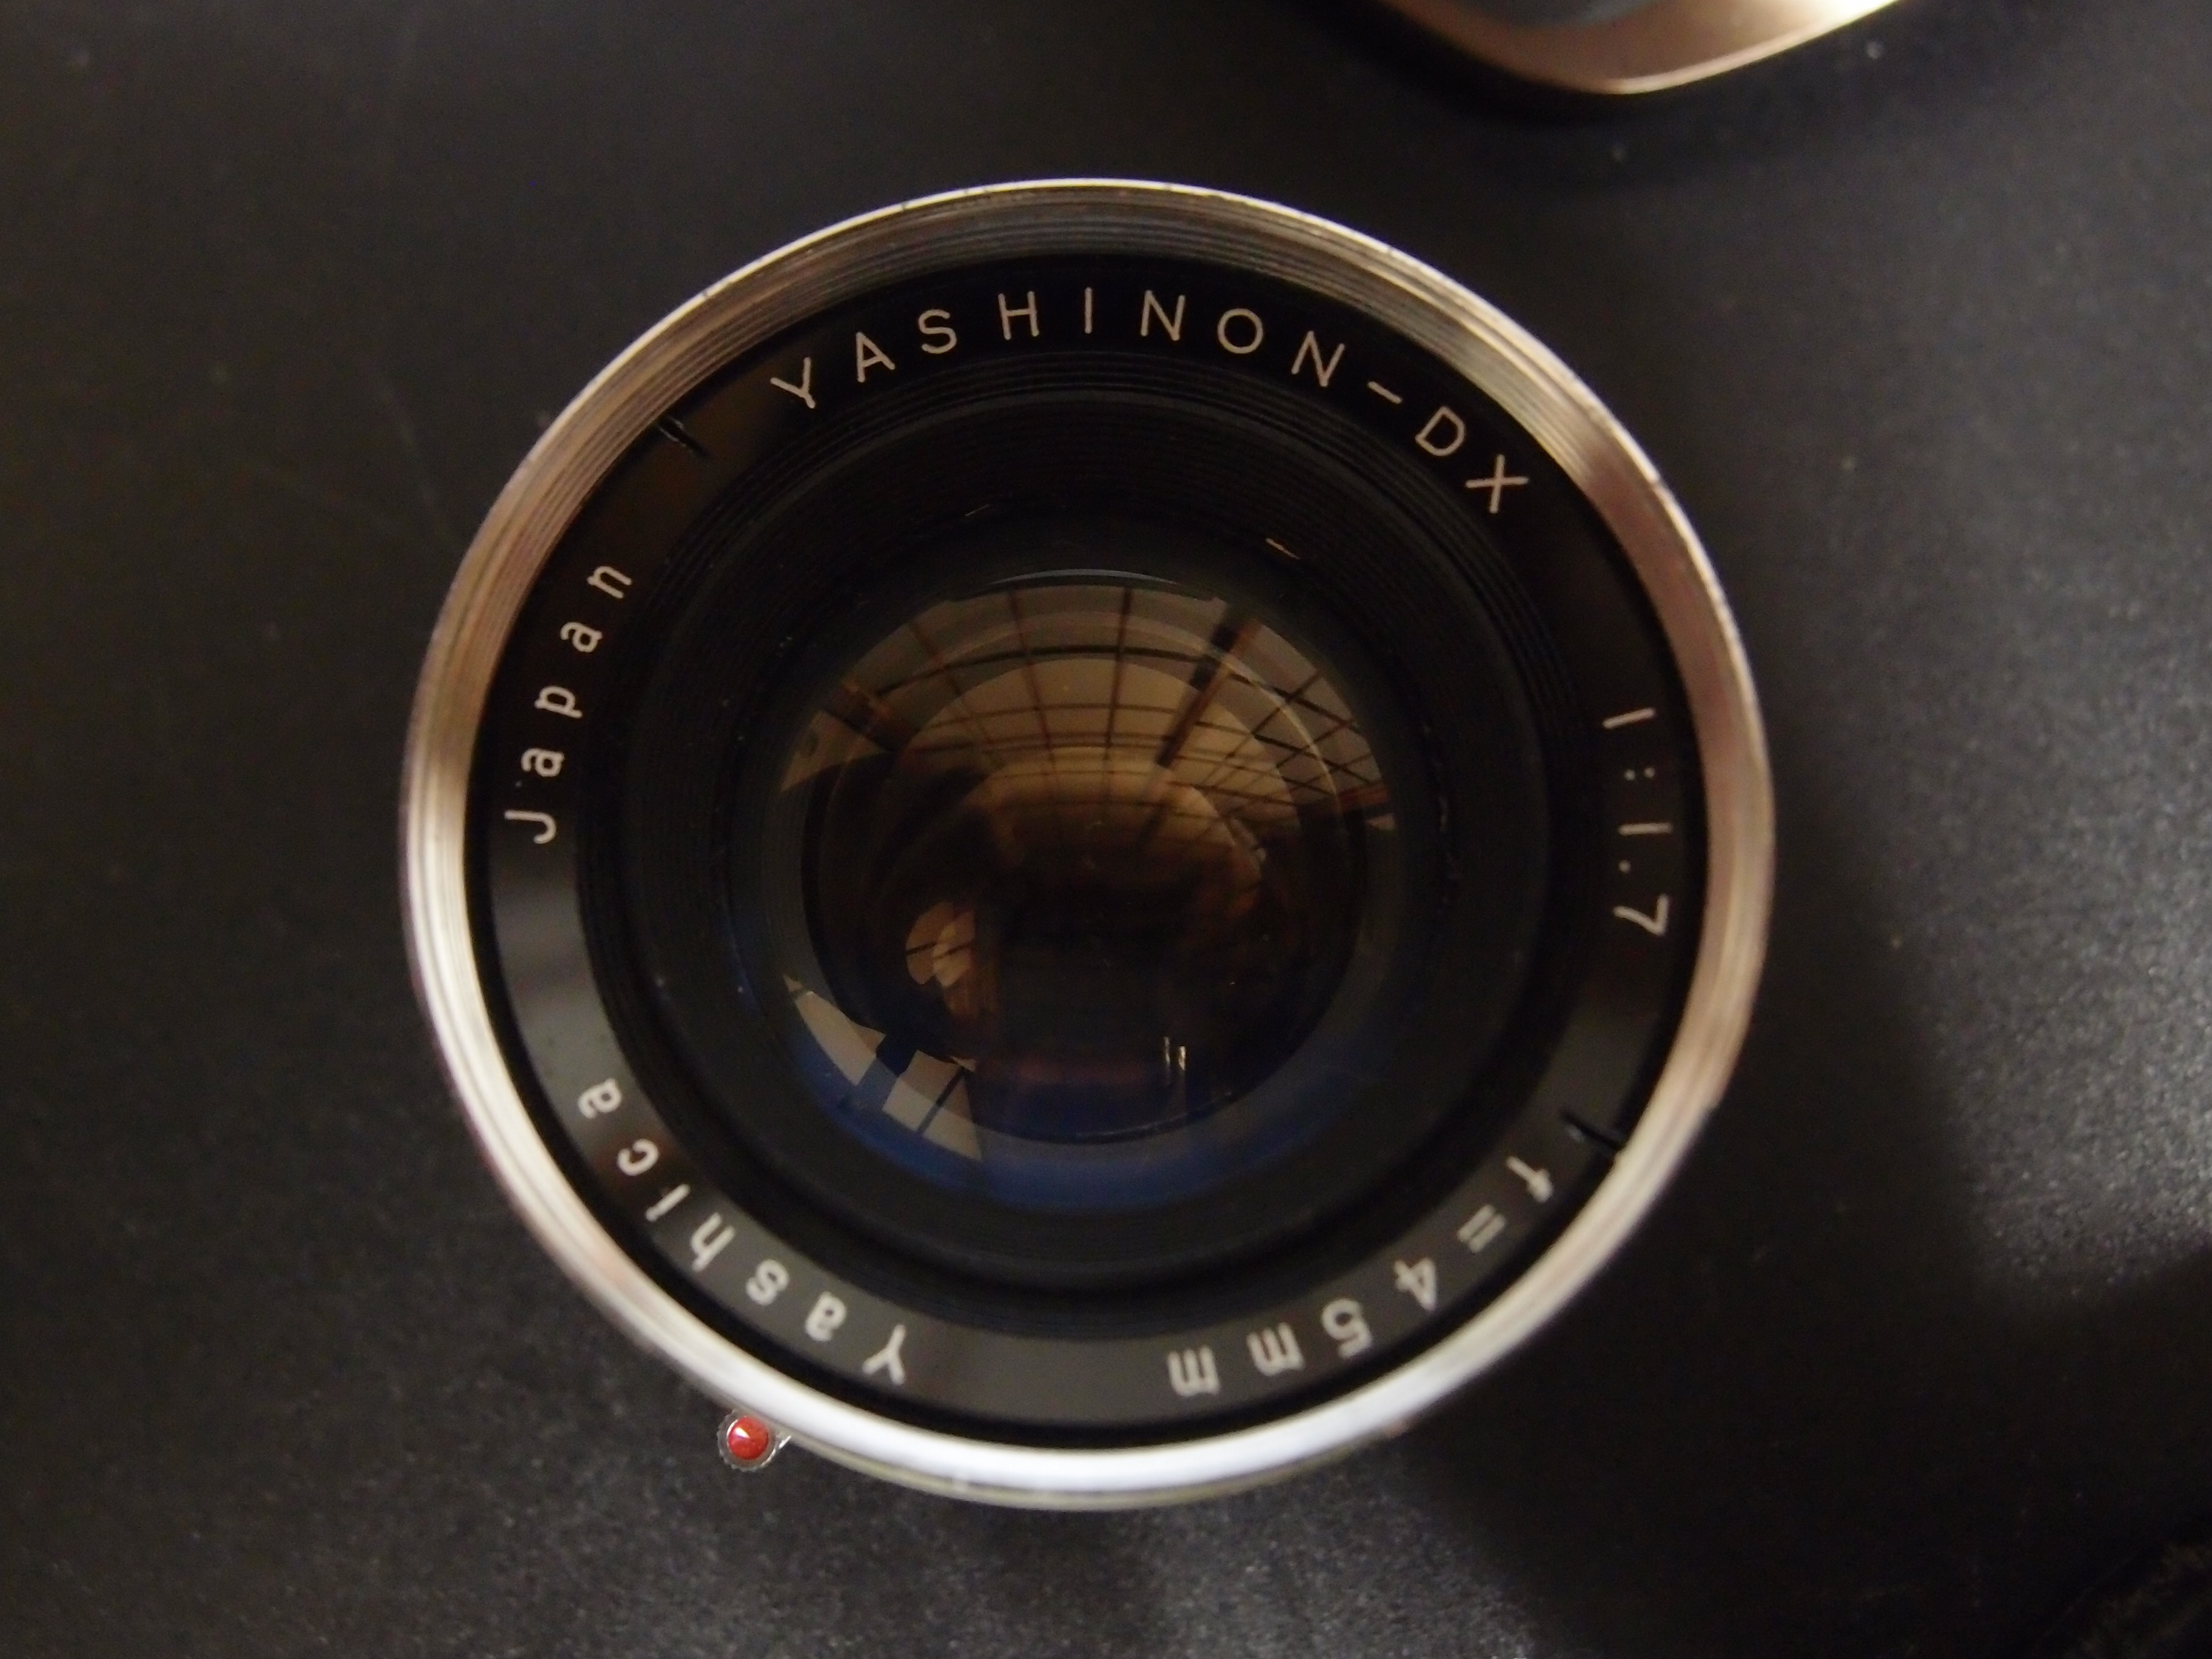 ヤシカエレクトロ35 GS改造品レンズ 富岡光学 珍品 富士フィルムX 